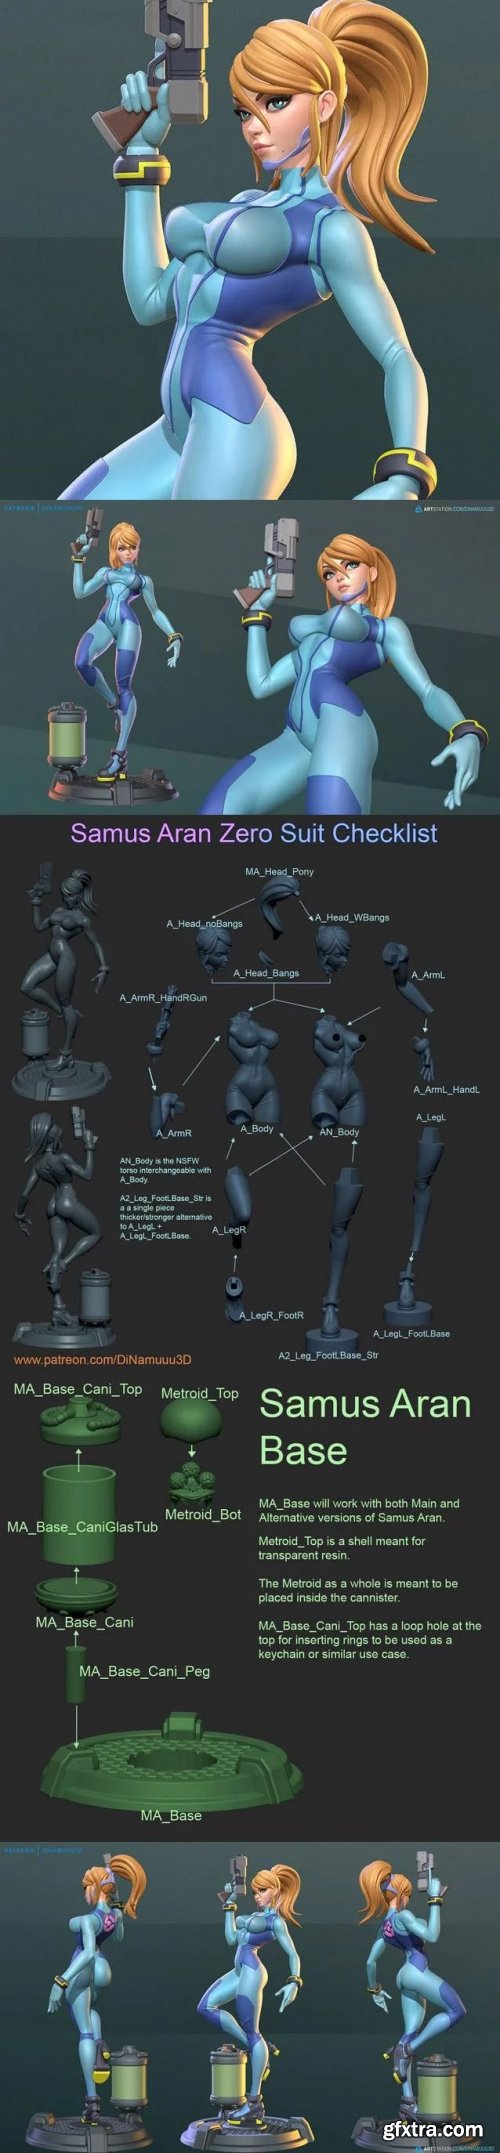 Samus Aran Zero Suit SFW and NSFW